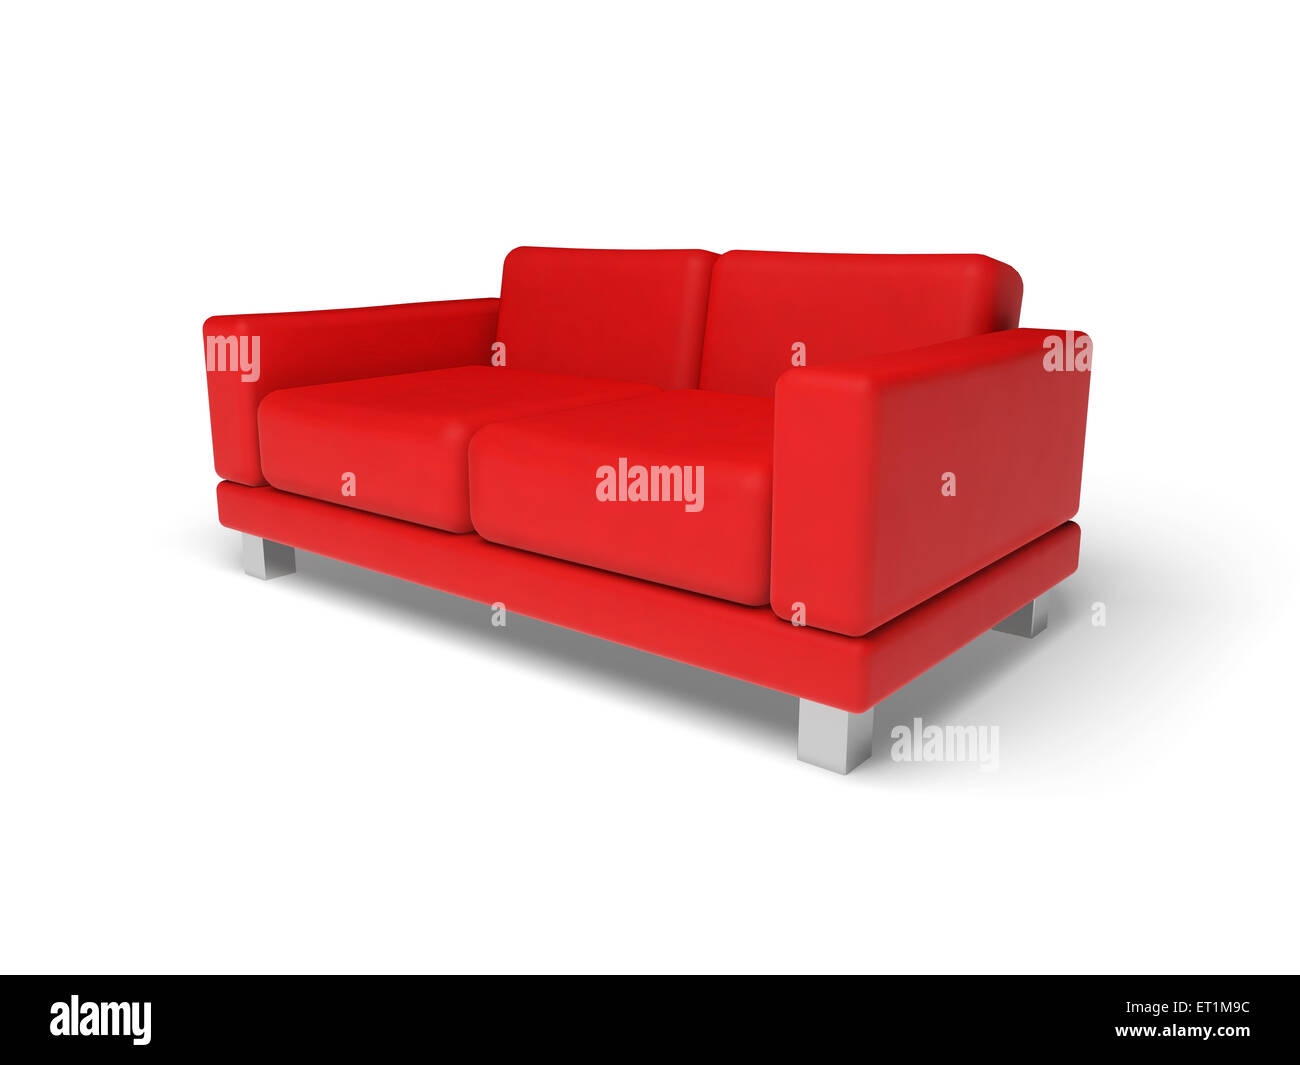 Canapé rouge isolé sur fond blanc marbre vide, 3d illustration, vue en perspective Banque D'Images